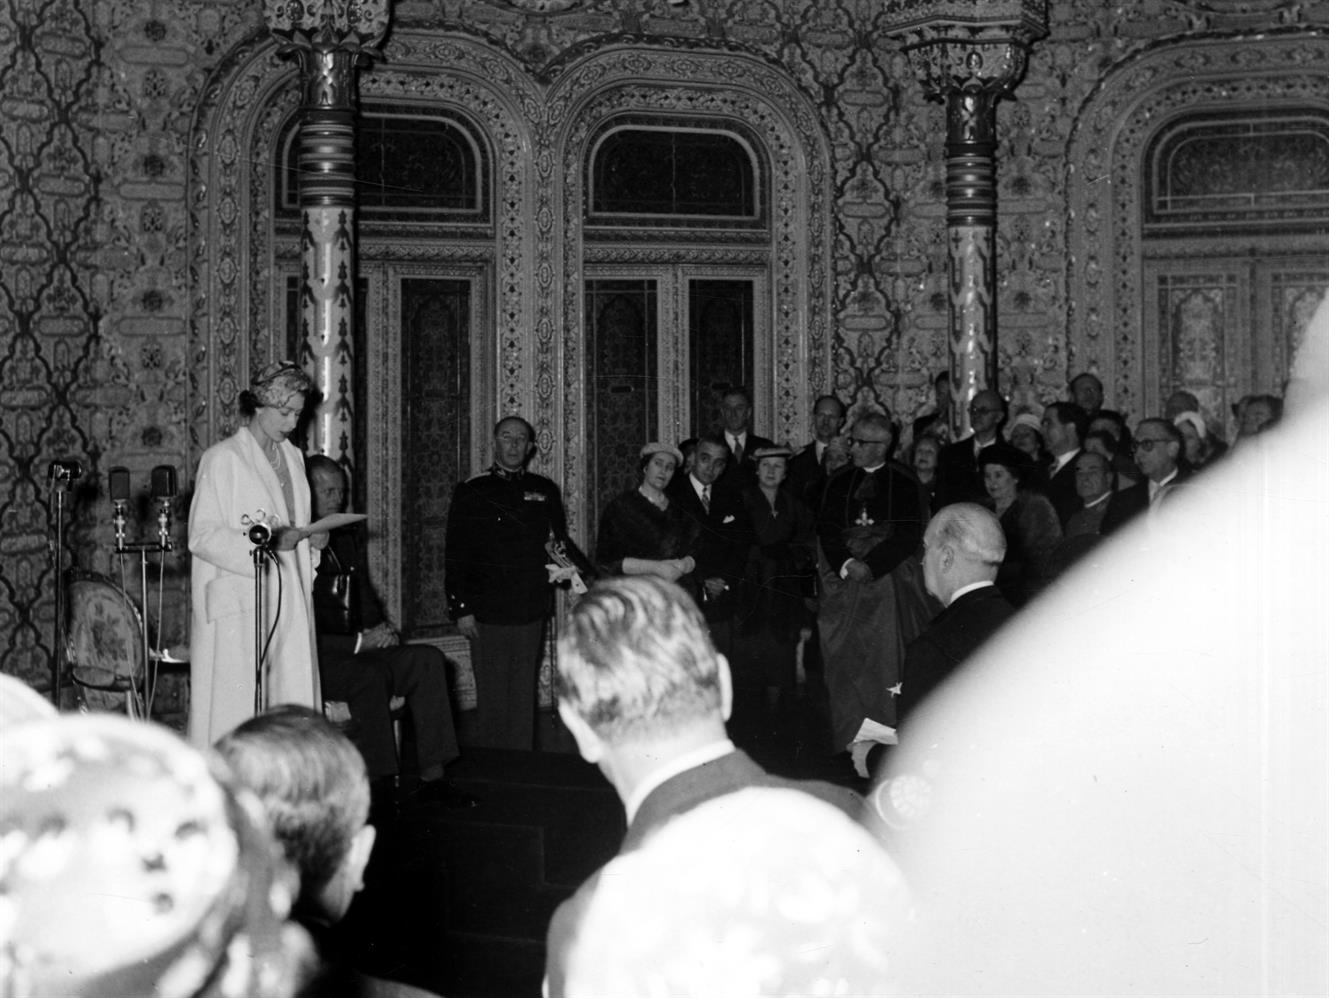 Visita da Rainha Isabel II de Inglaterra à cidade do Porto : discurso da Rainha no salão árabe do palácio da Bolsa